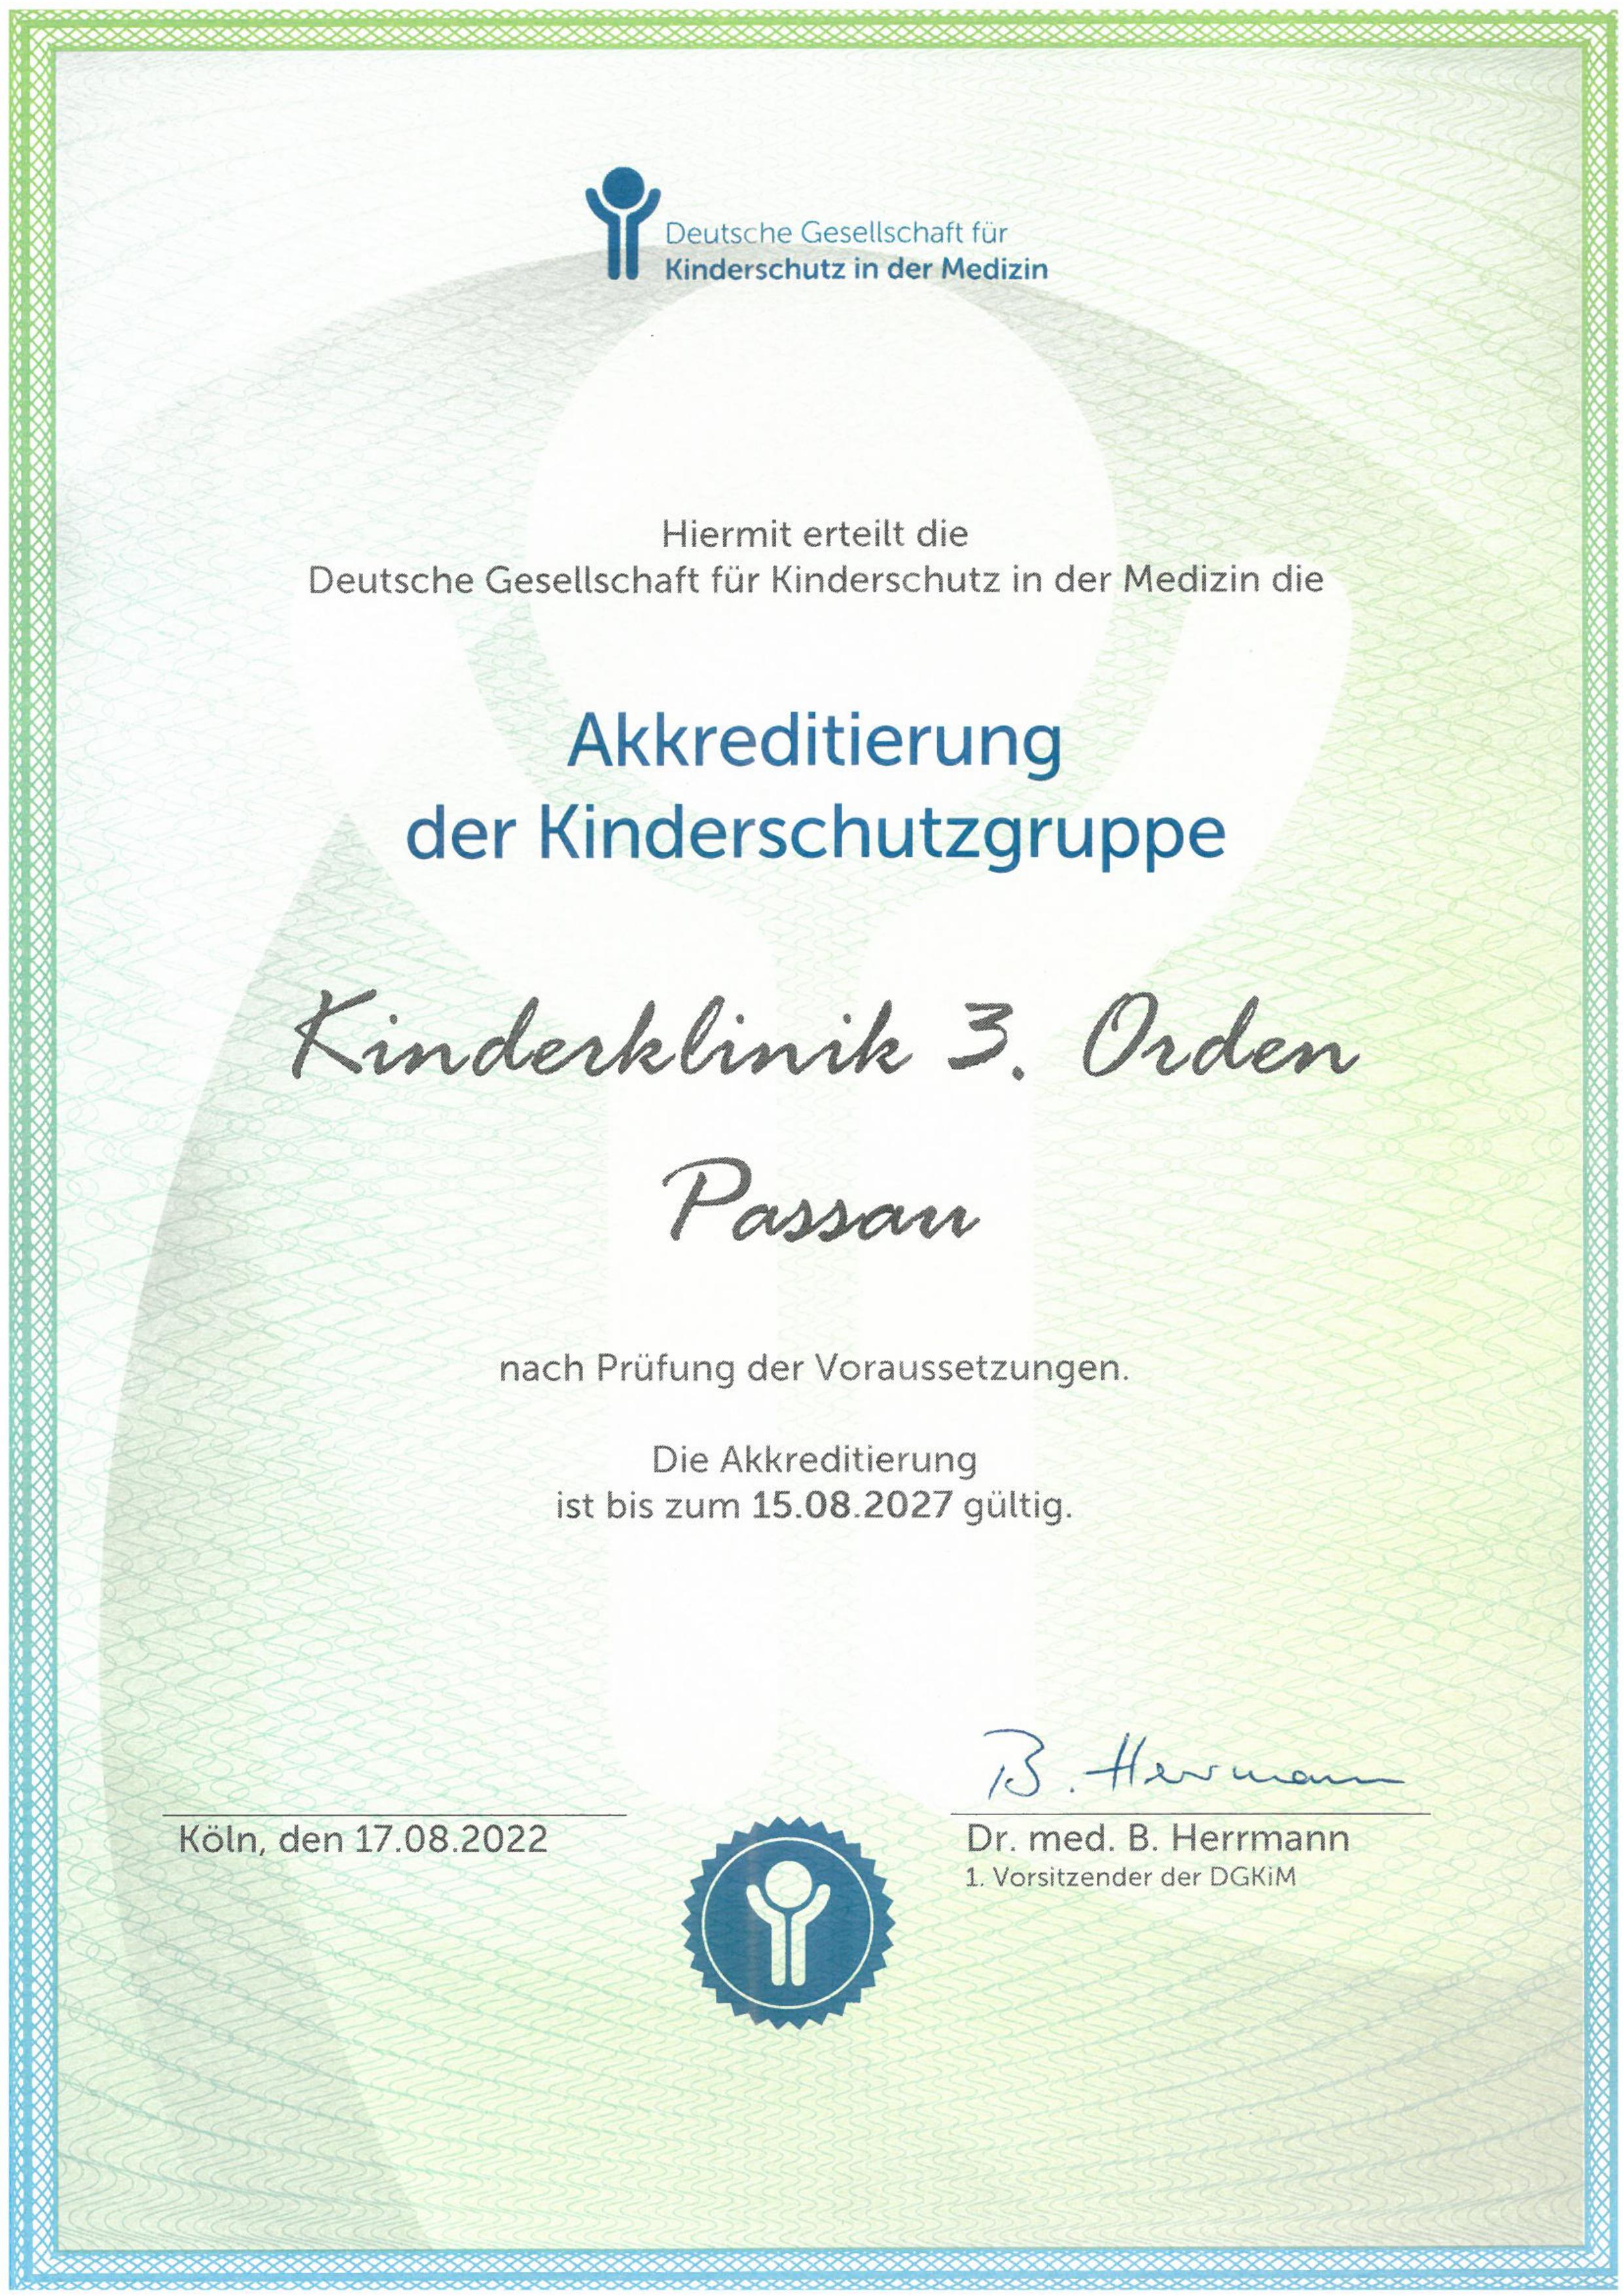 2022 09 01 Zertifikat Medizinisches Kinderschutzteam Kinderklinik Passau erneut akkreditiert